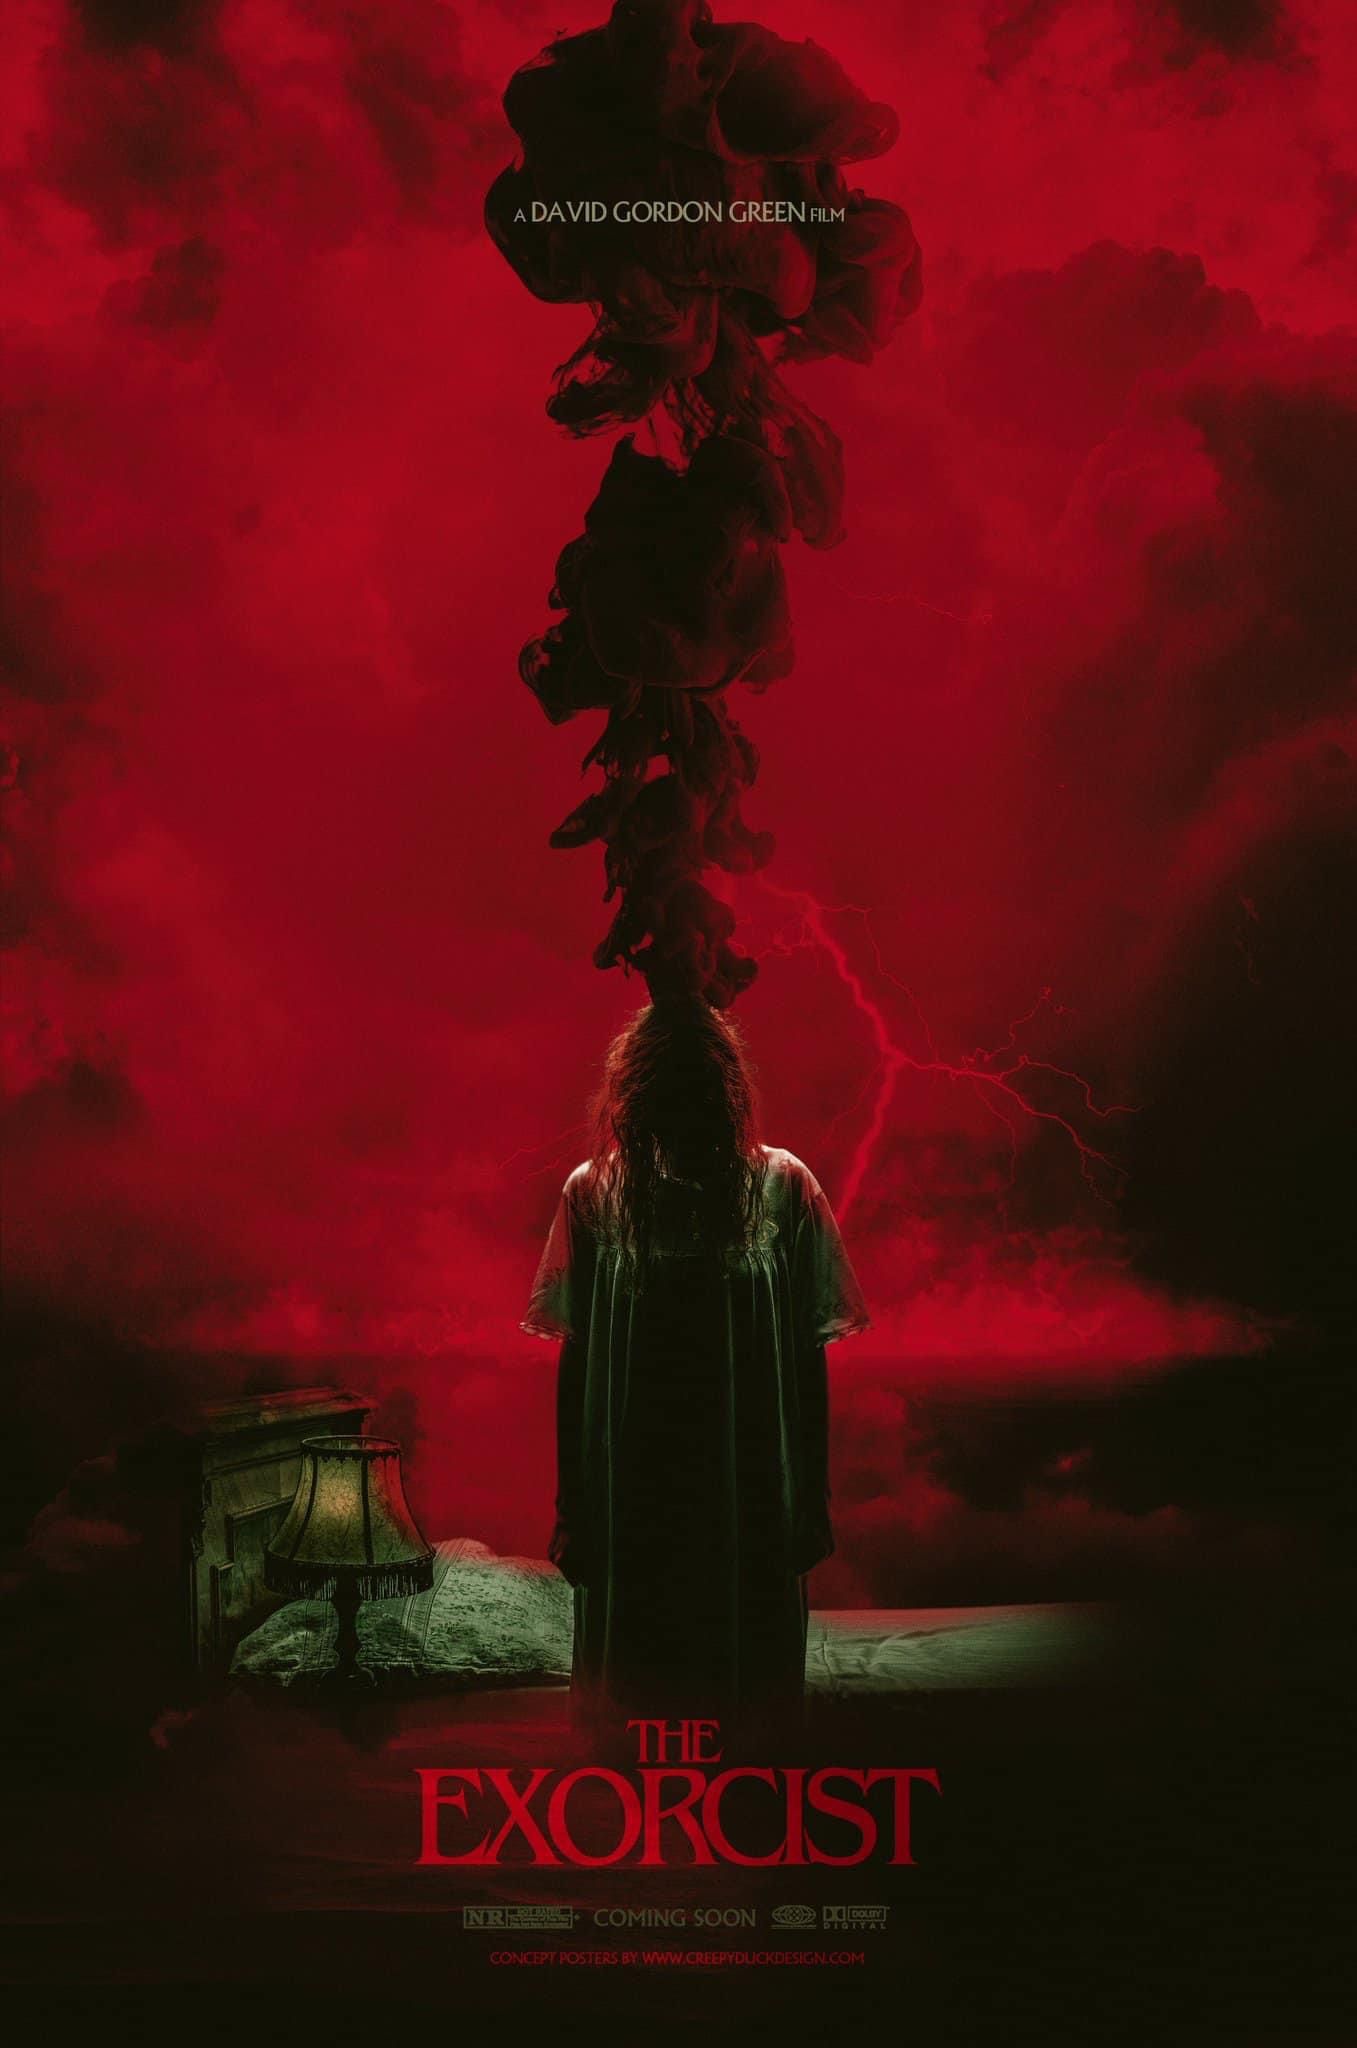 David Gordon Green Exits 'Exorcist' Trilogy